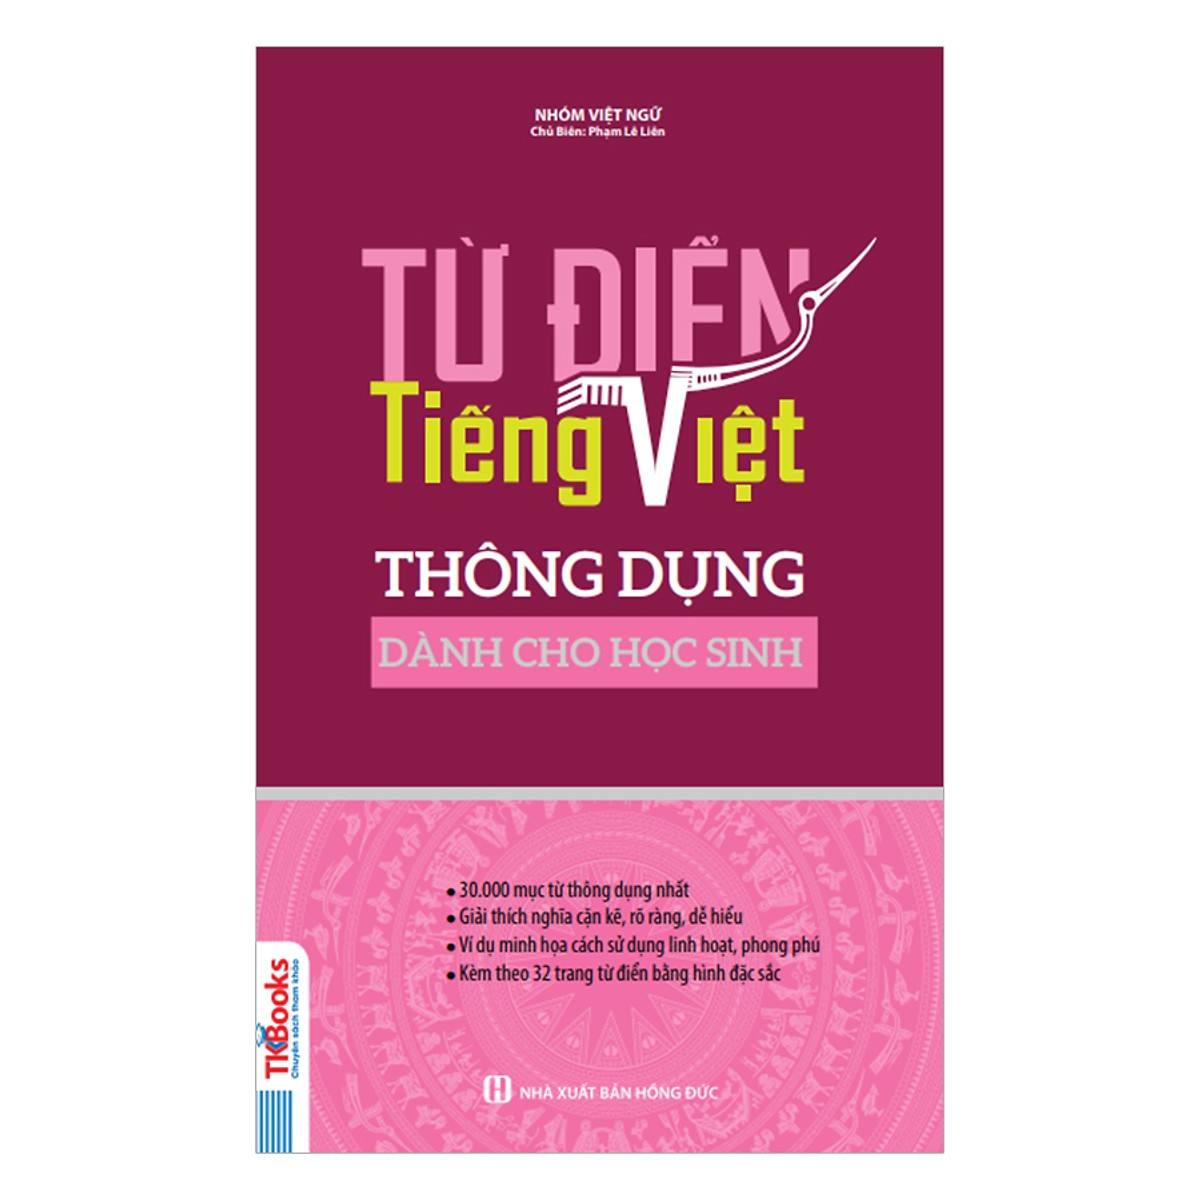 Từ Điển Tiếng Việt Thông Dụng Dành Cho Học Sinh (Bìa Hồng) tặng kèm bút tạo hình ngộ nghĩnh